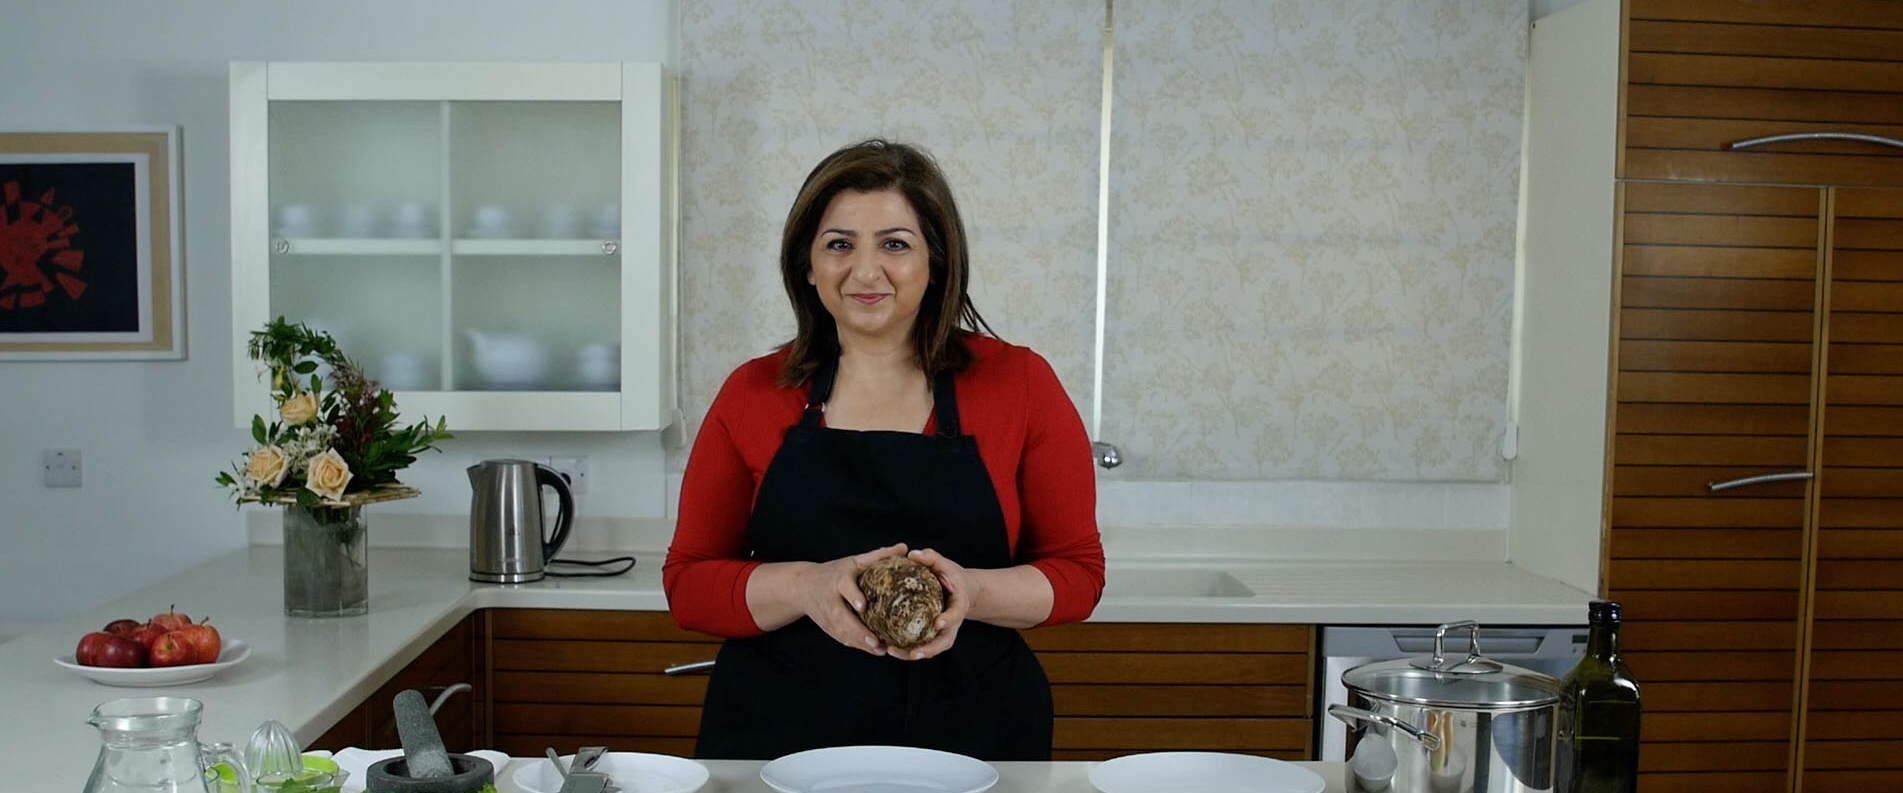 Кипрская кухня с Мариленой: Колокаси с сельдереем и помидорами